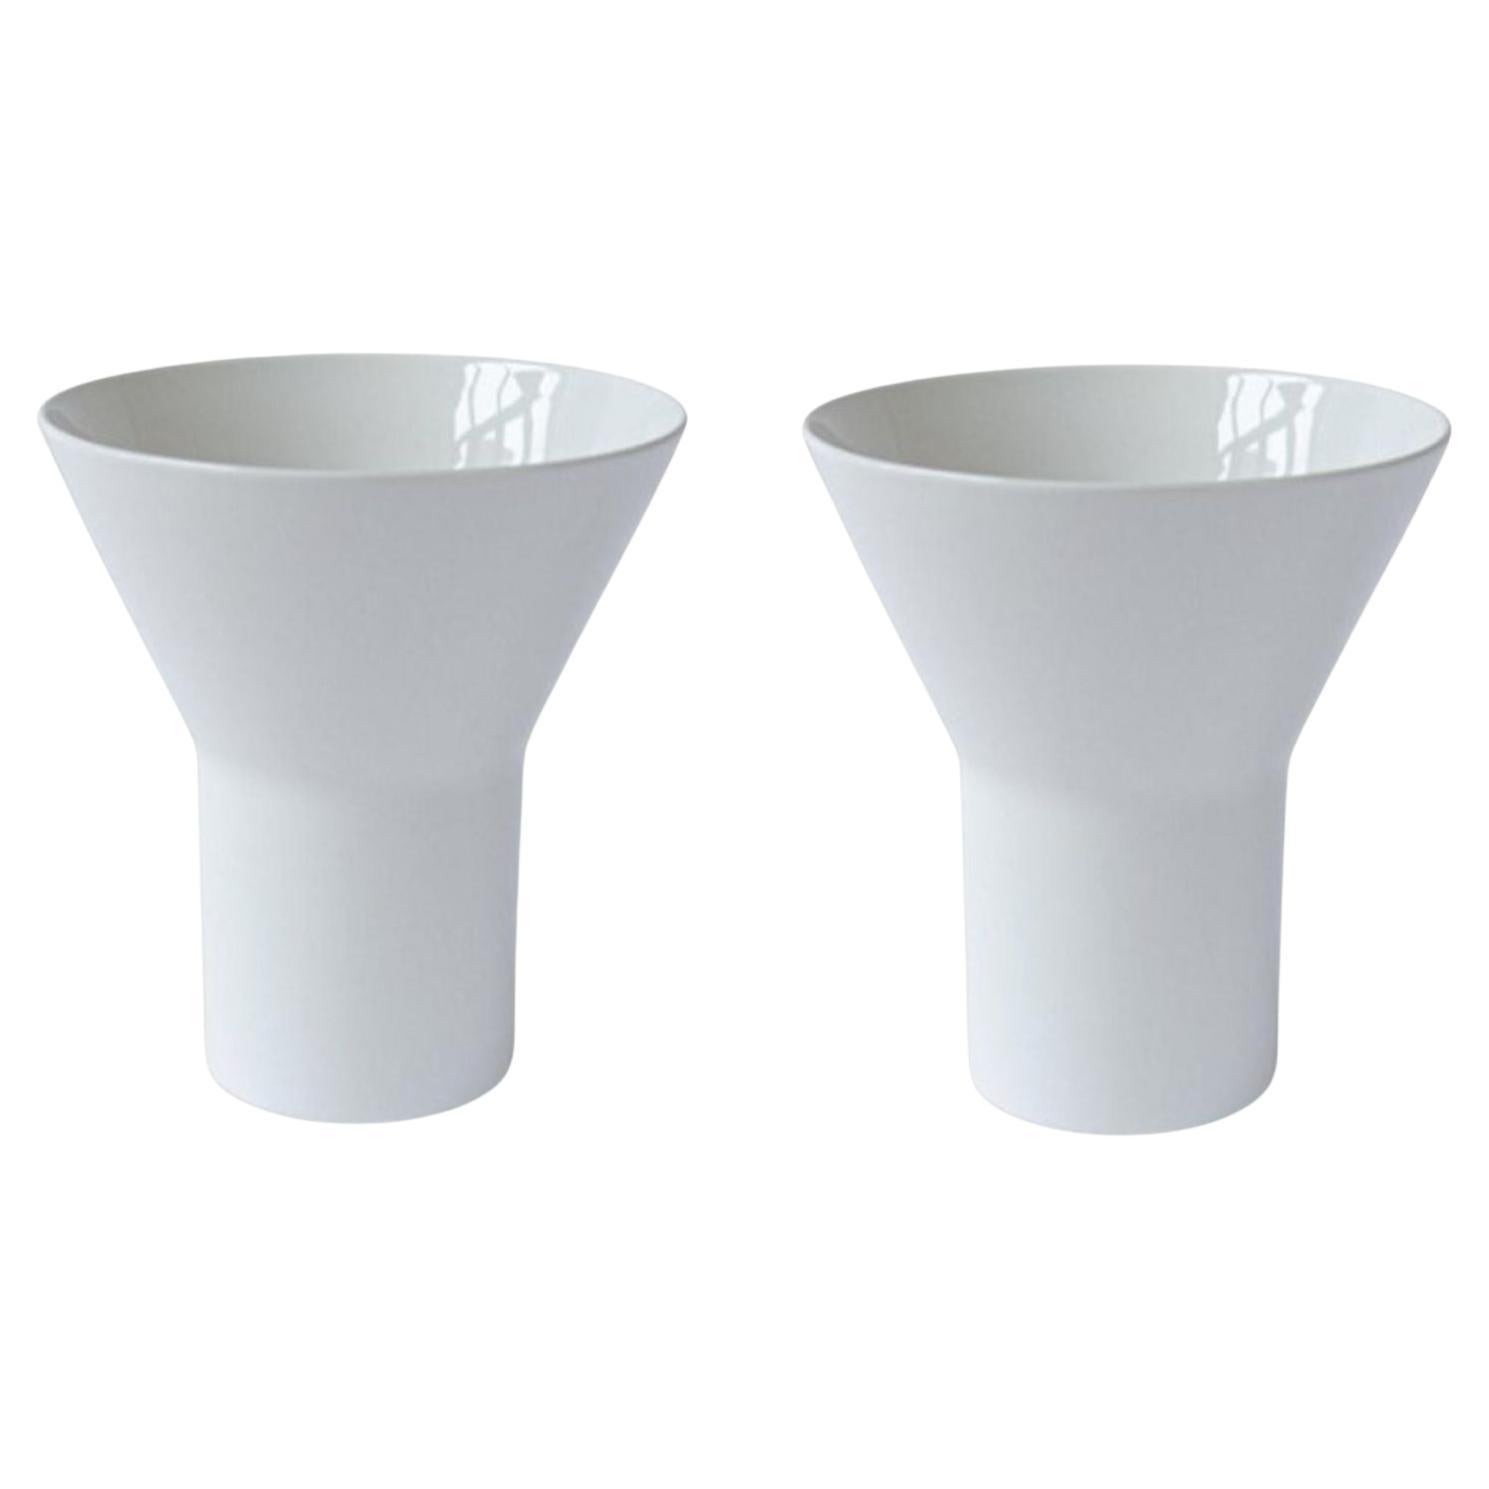 Set of 2 Medium White Ceramic KYO Vases by Mazo Design